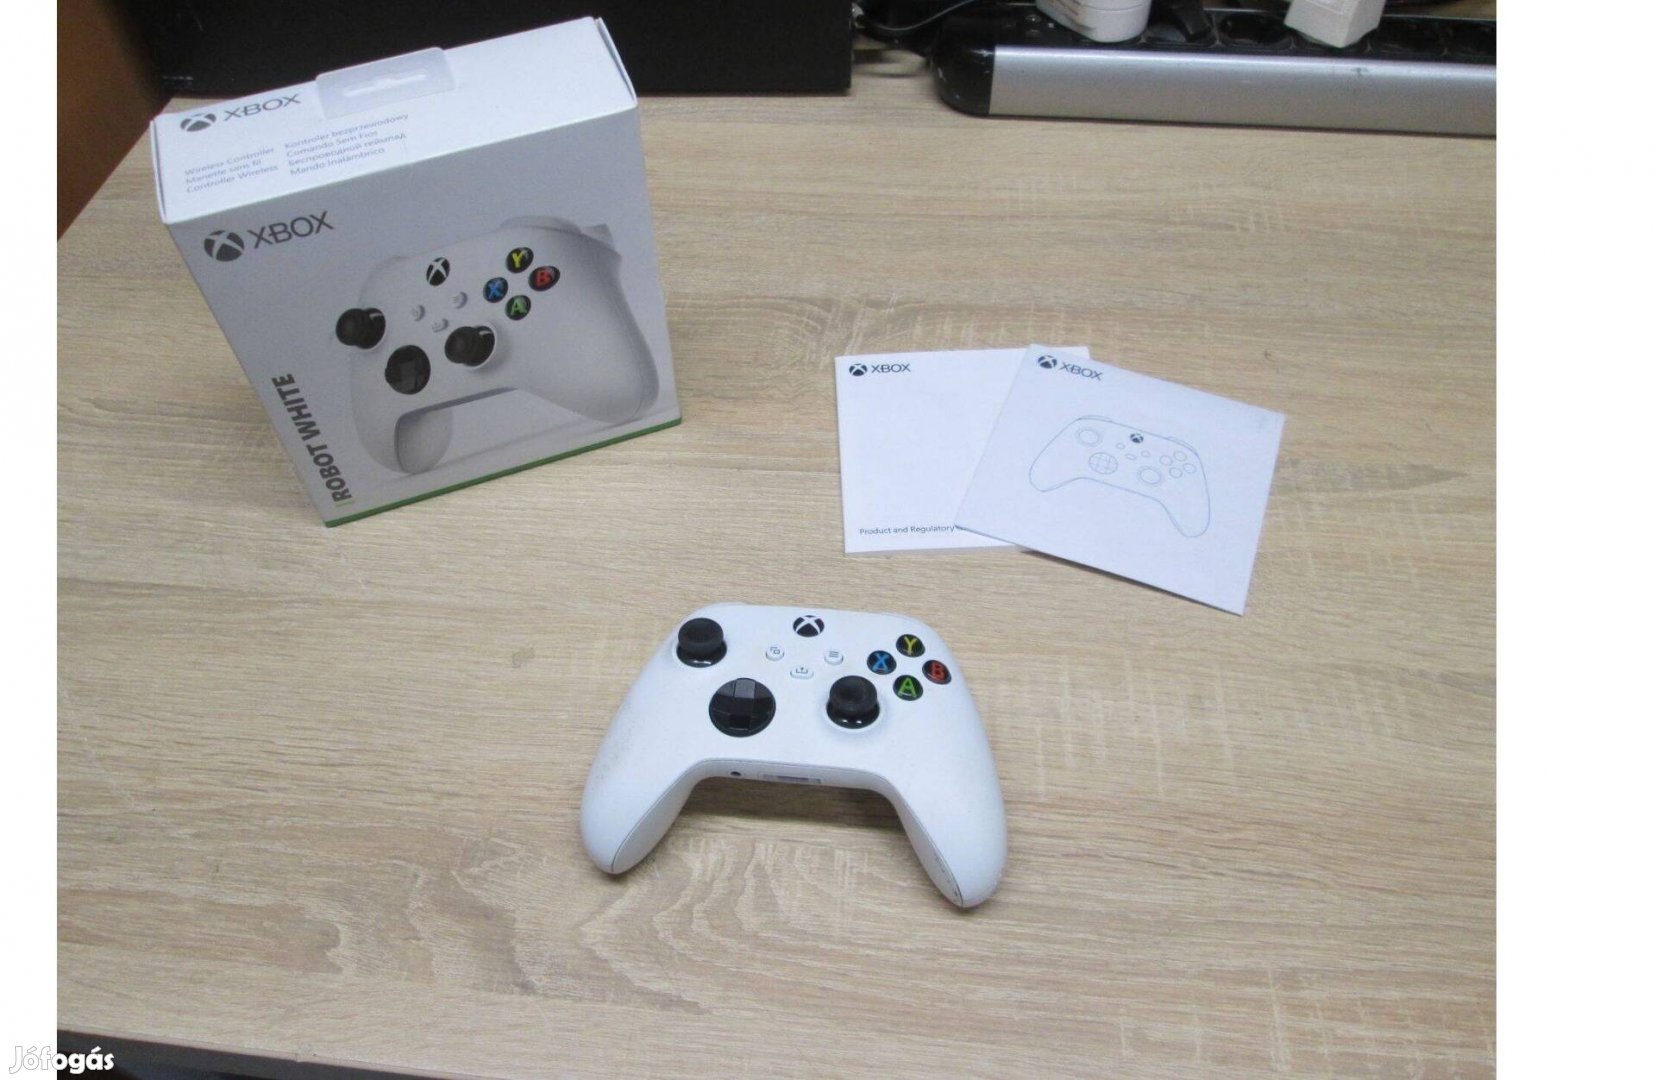 Xbox "robot white" controller